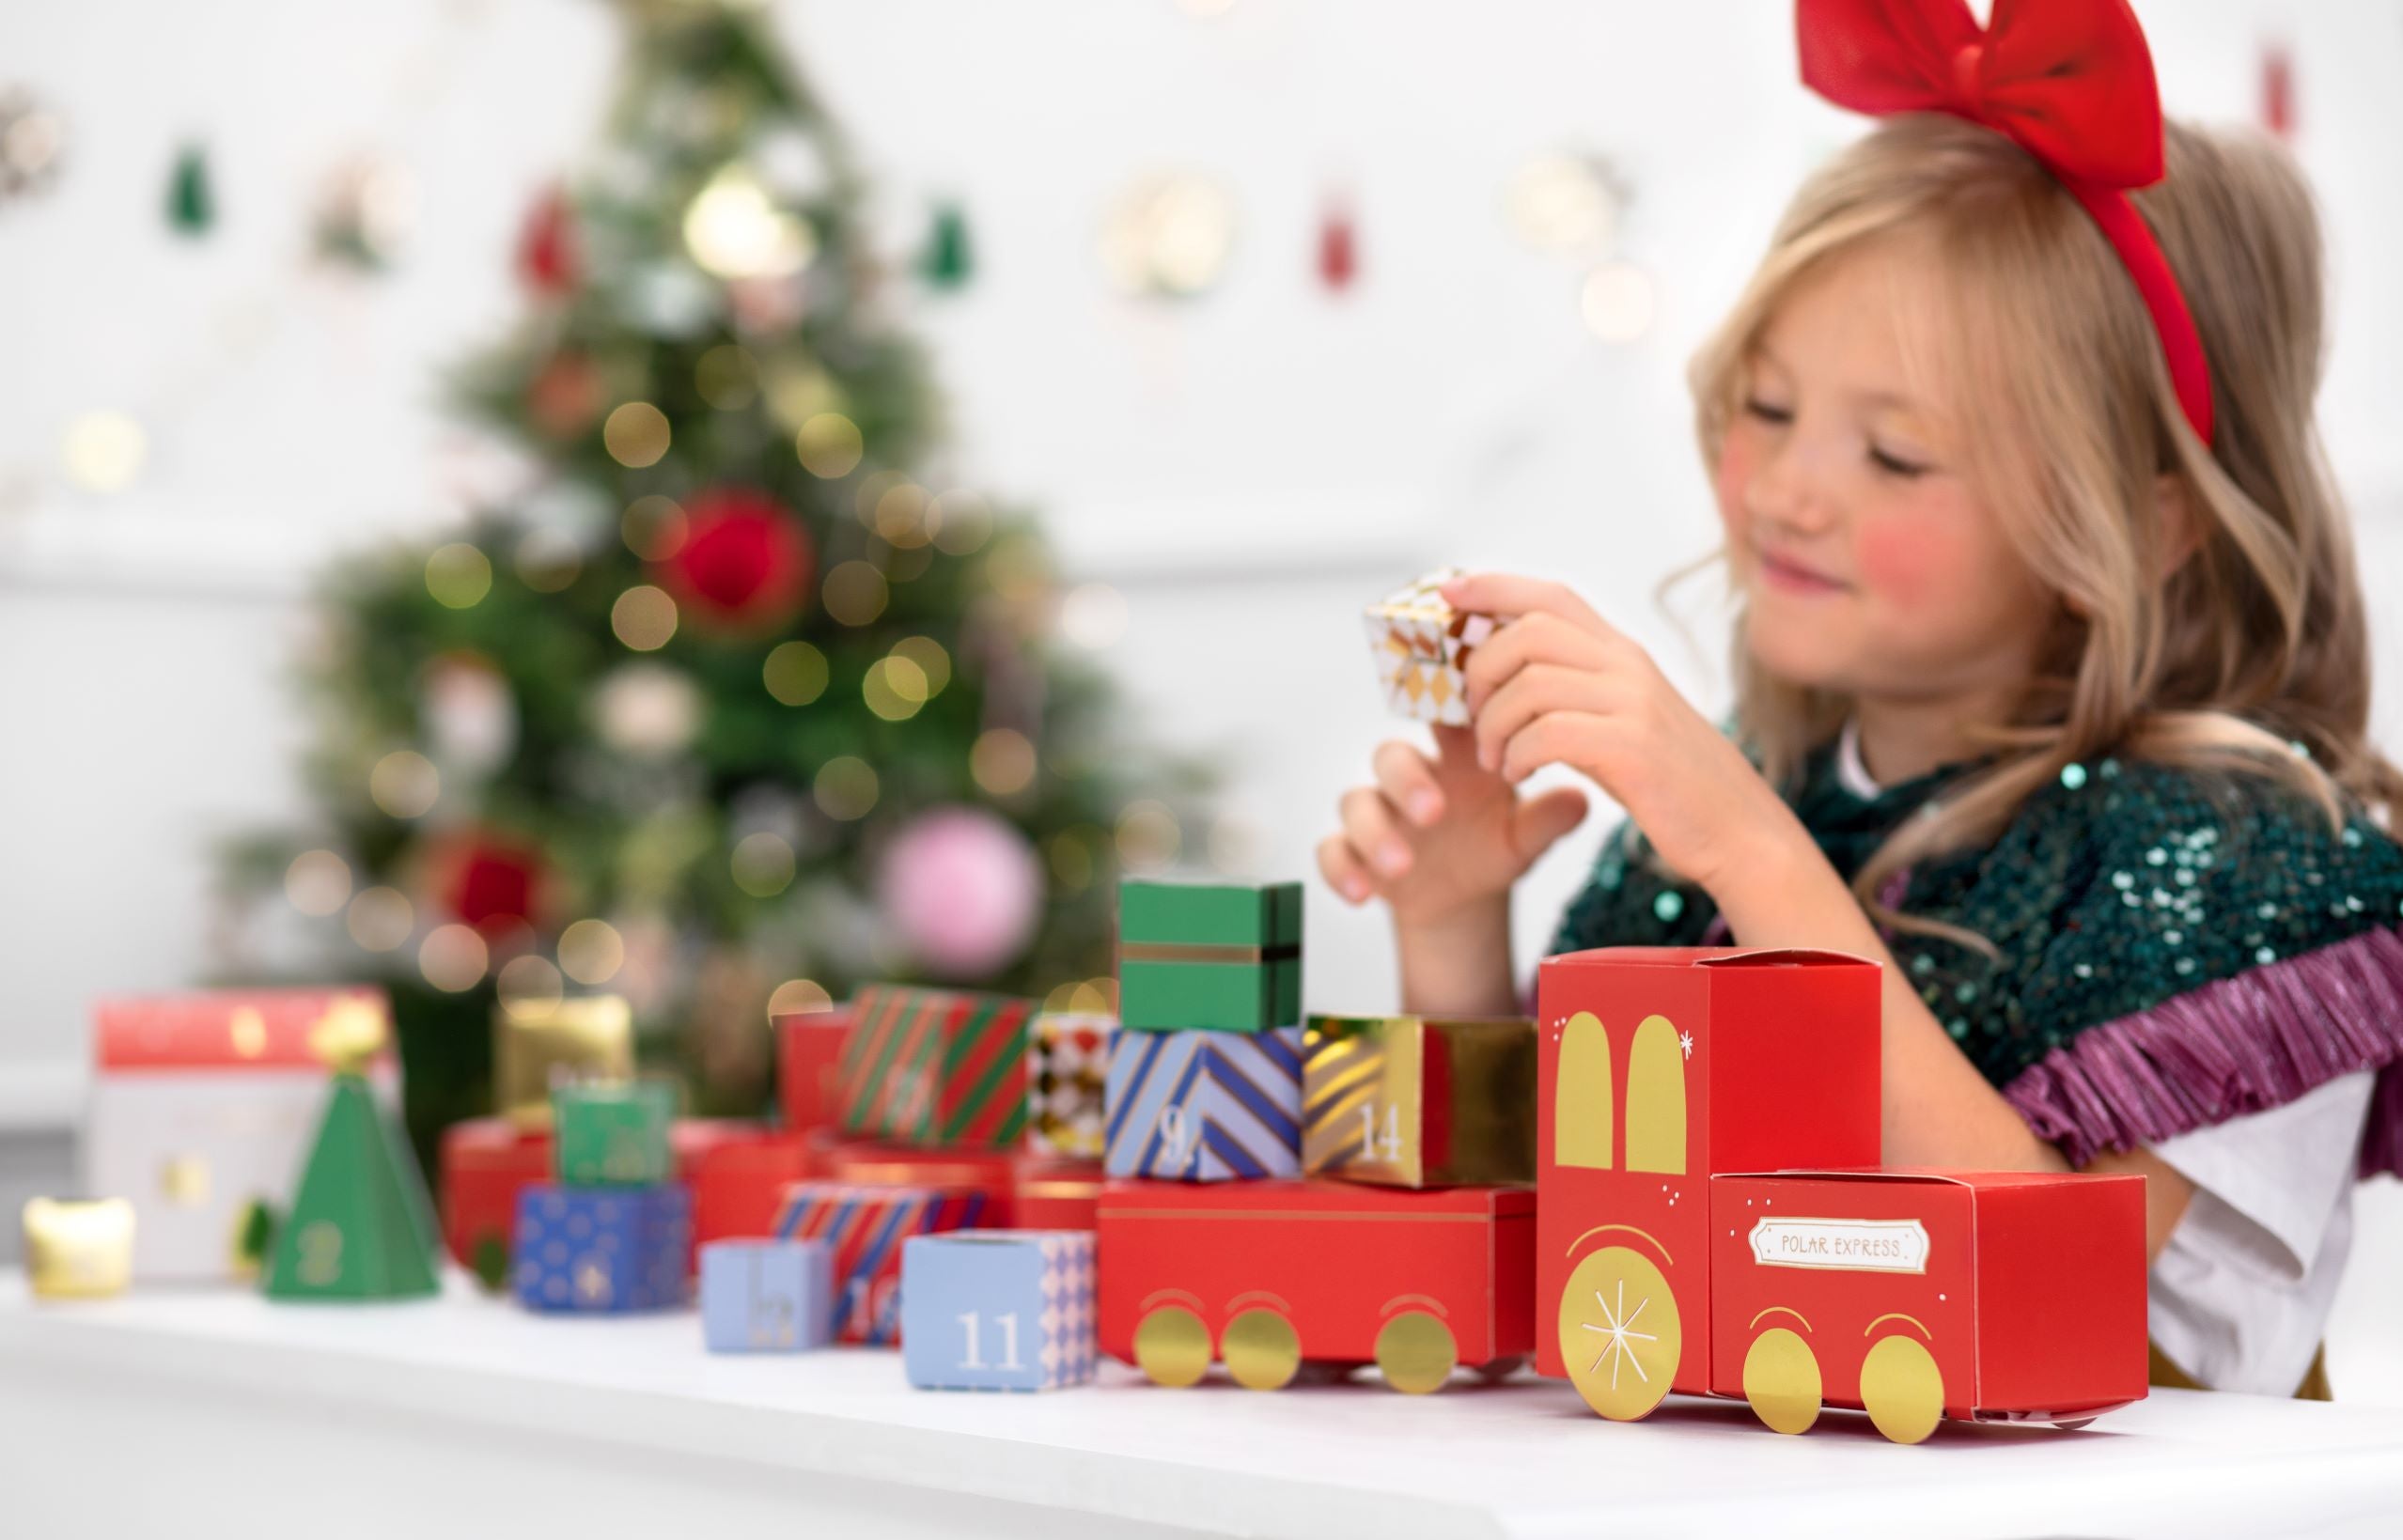 Advent Calendar Train Christmas decoration ideas